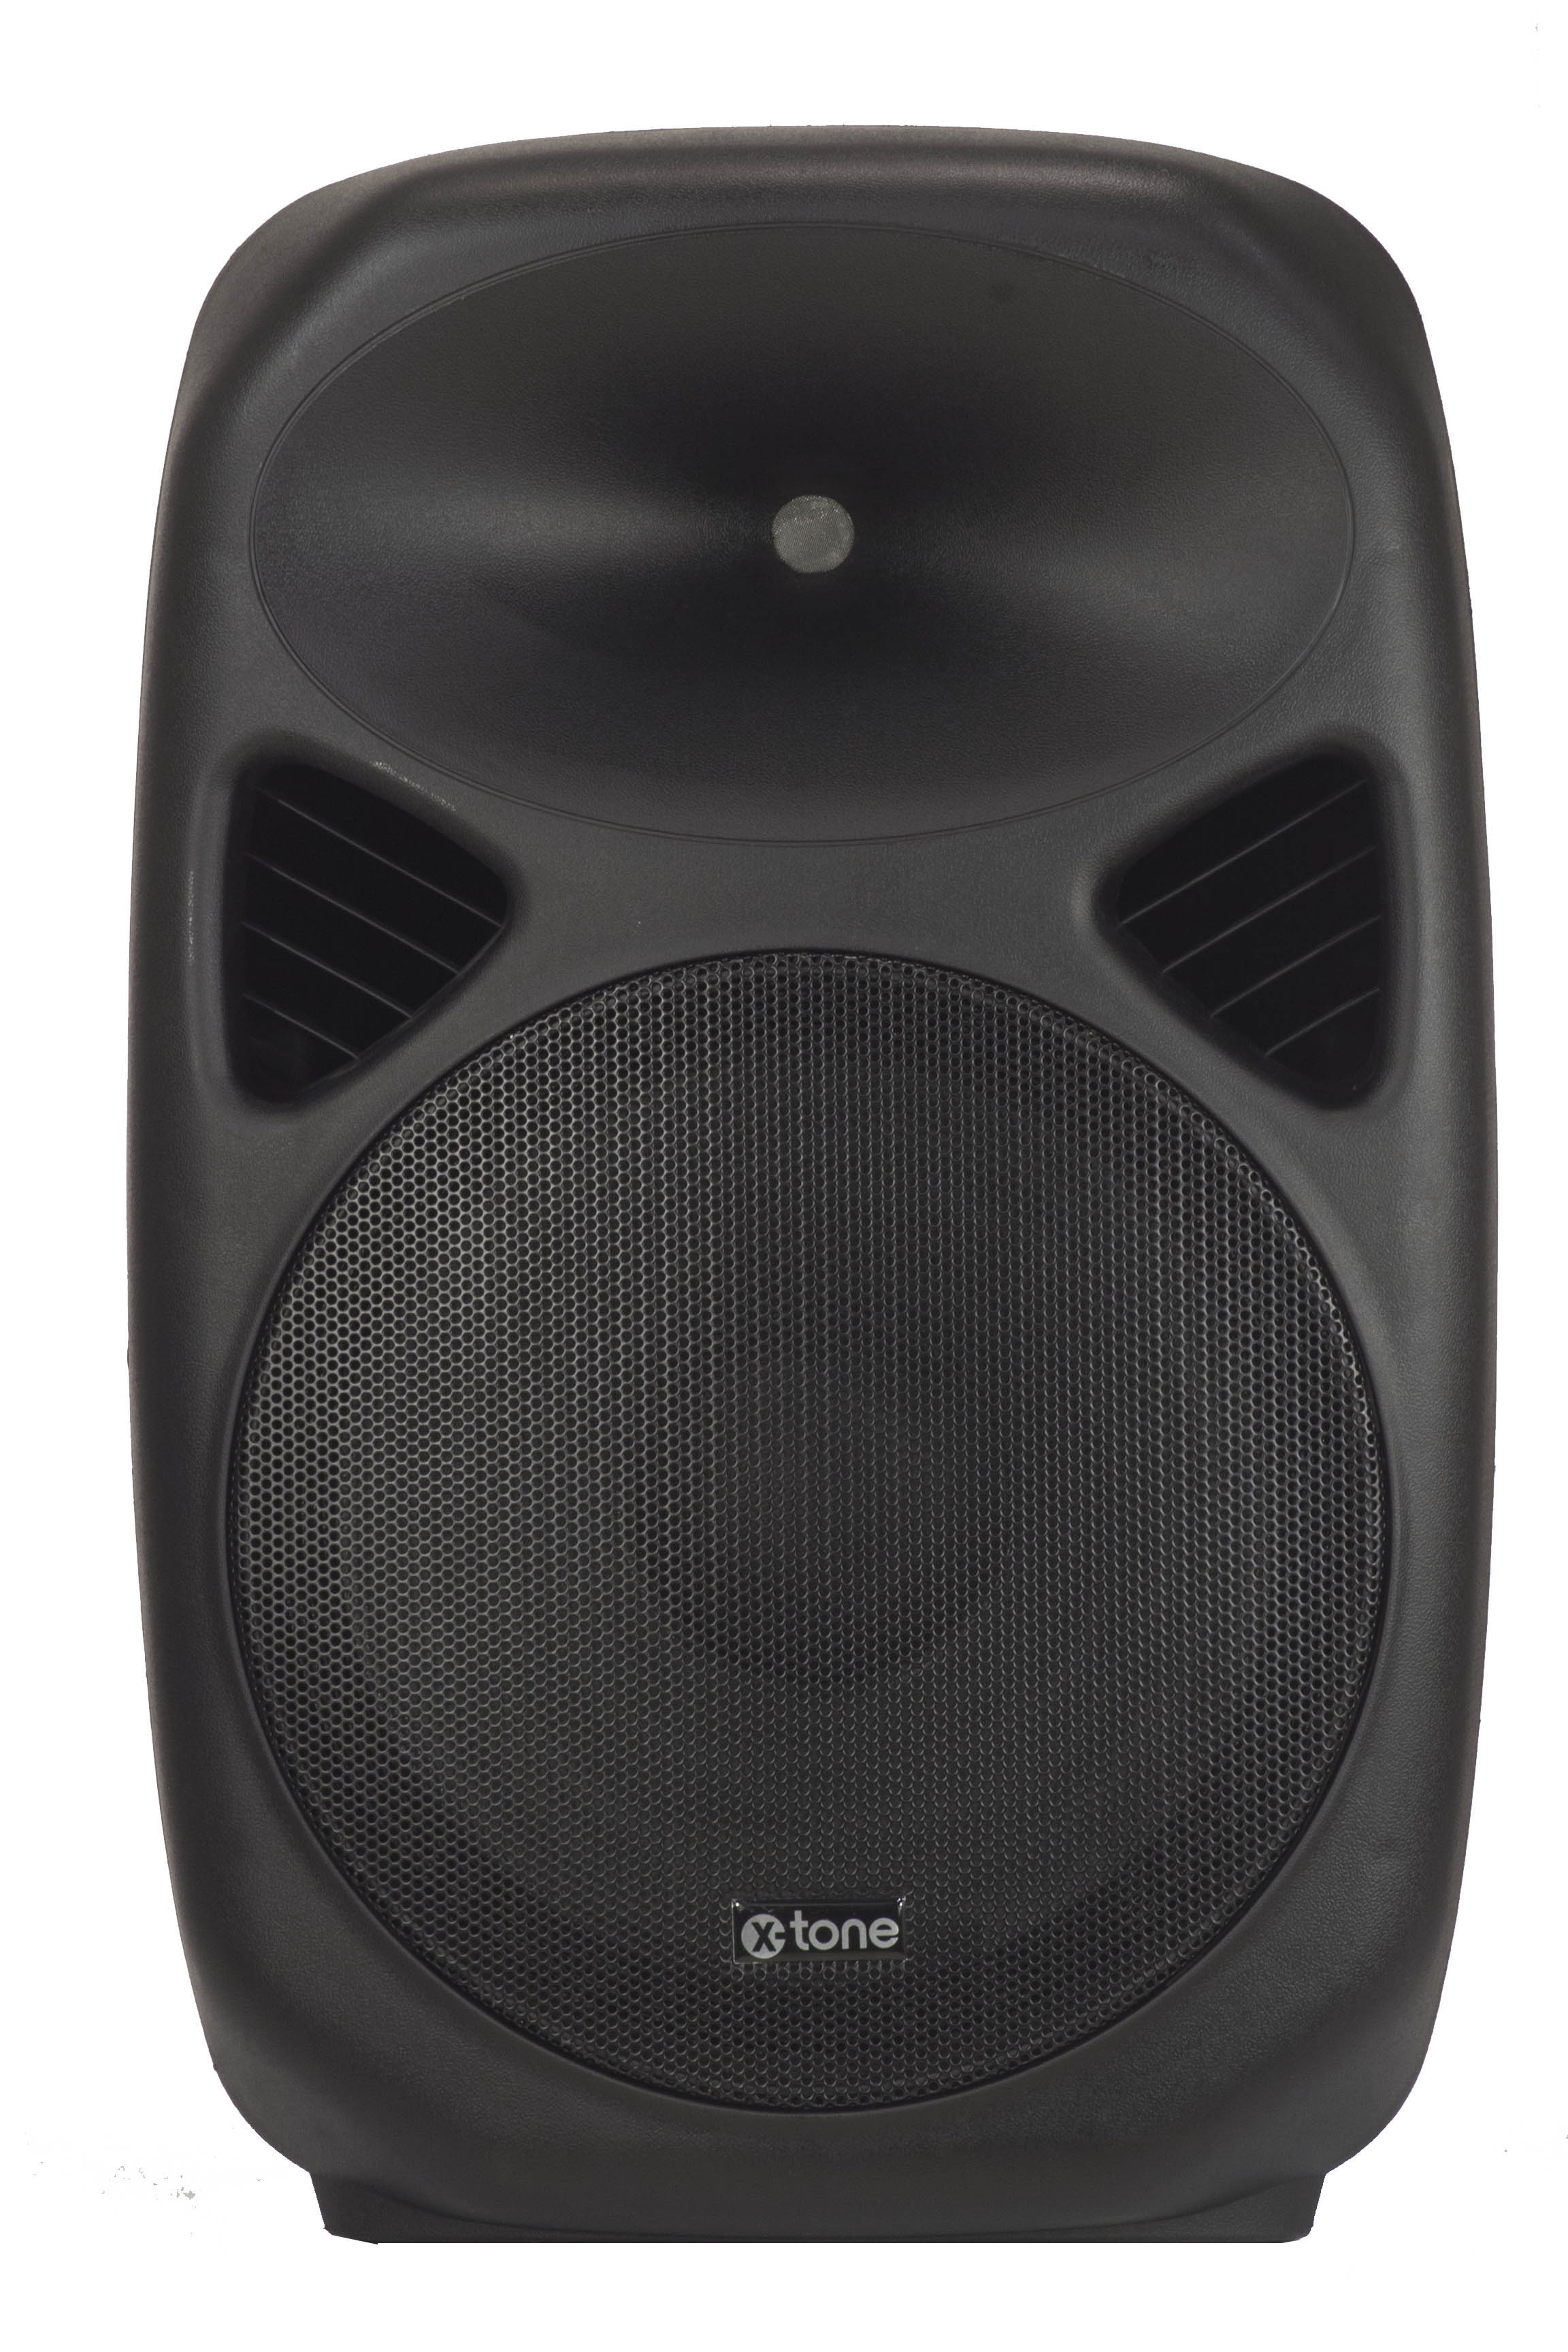 X-tone Sma-15 - Active full-range speaker - Variation 3